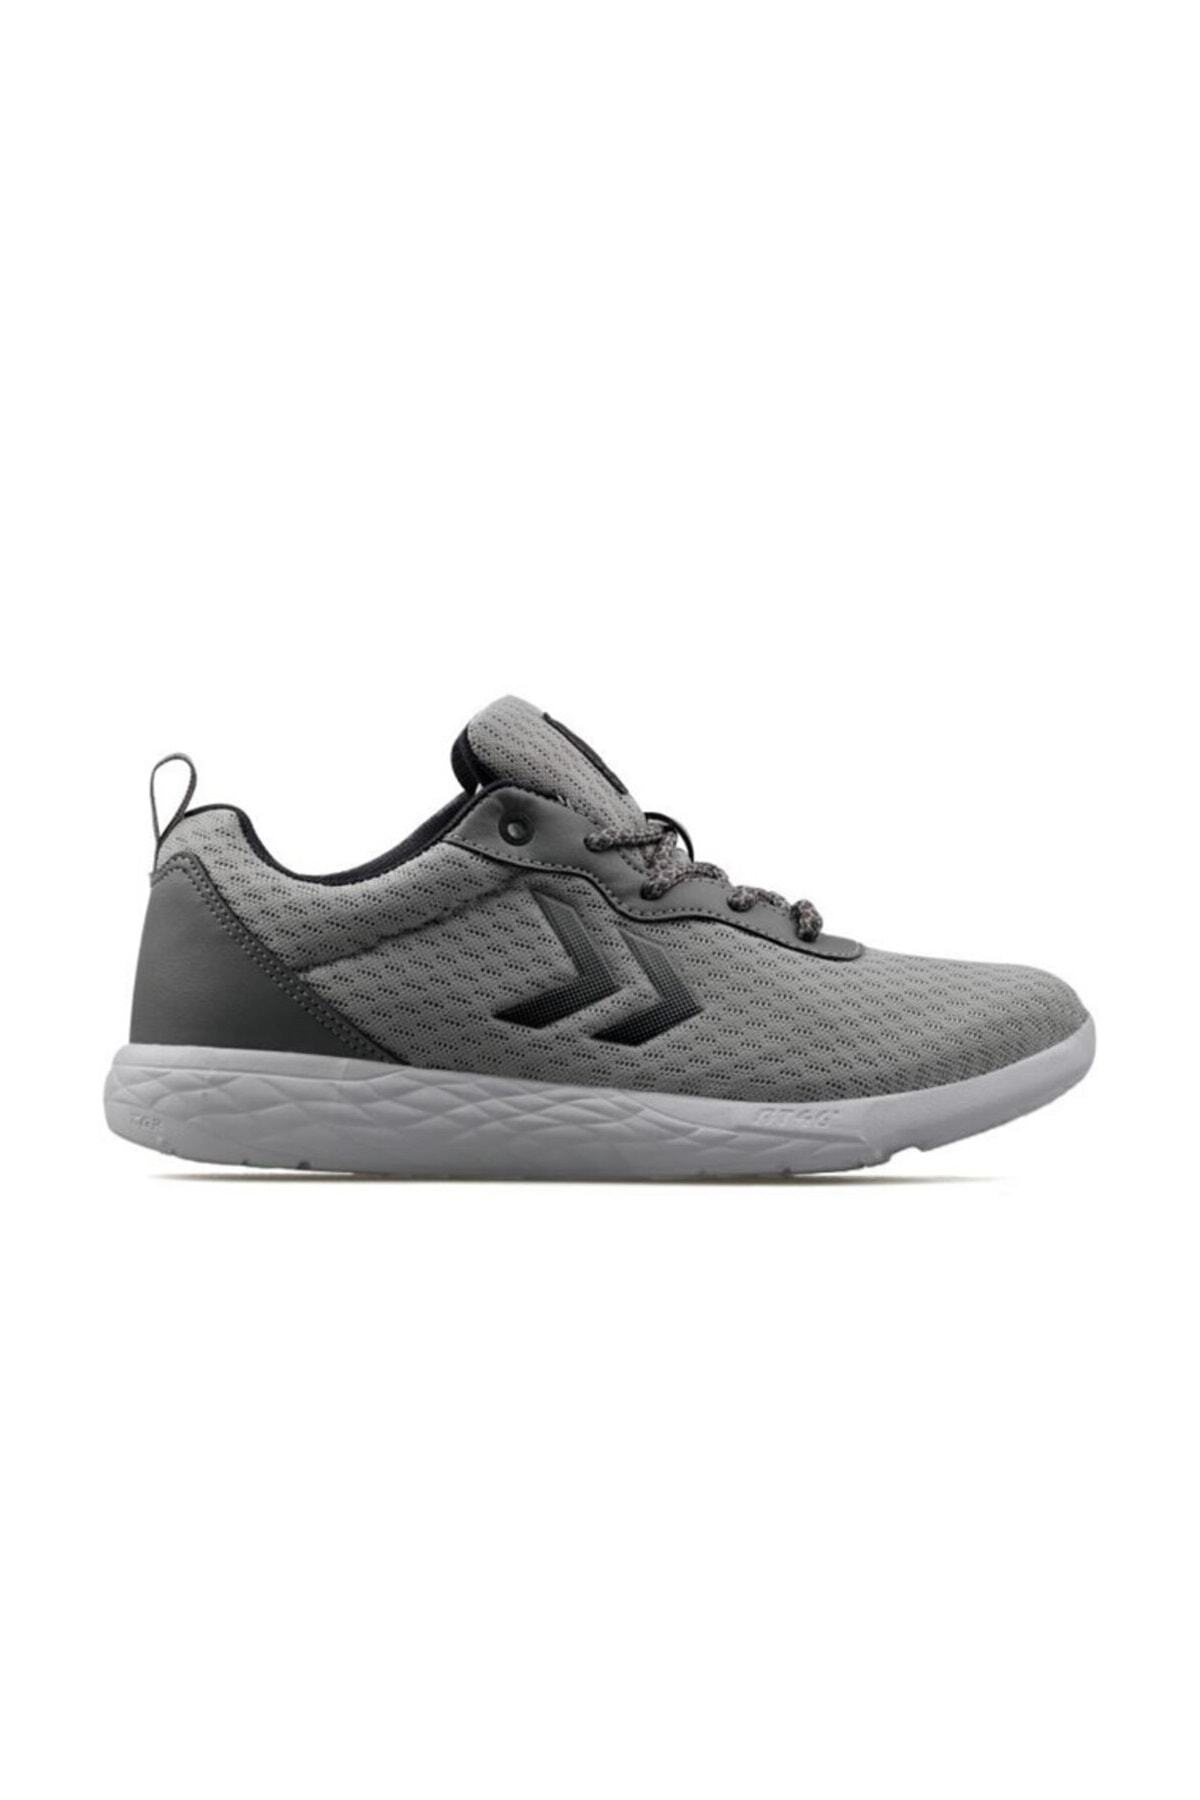 Hummel Oslo - Unisex Gray Sneakers